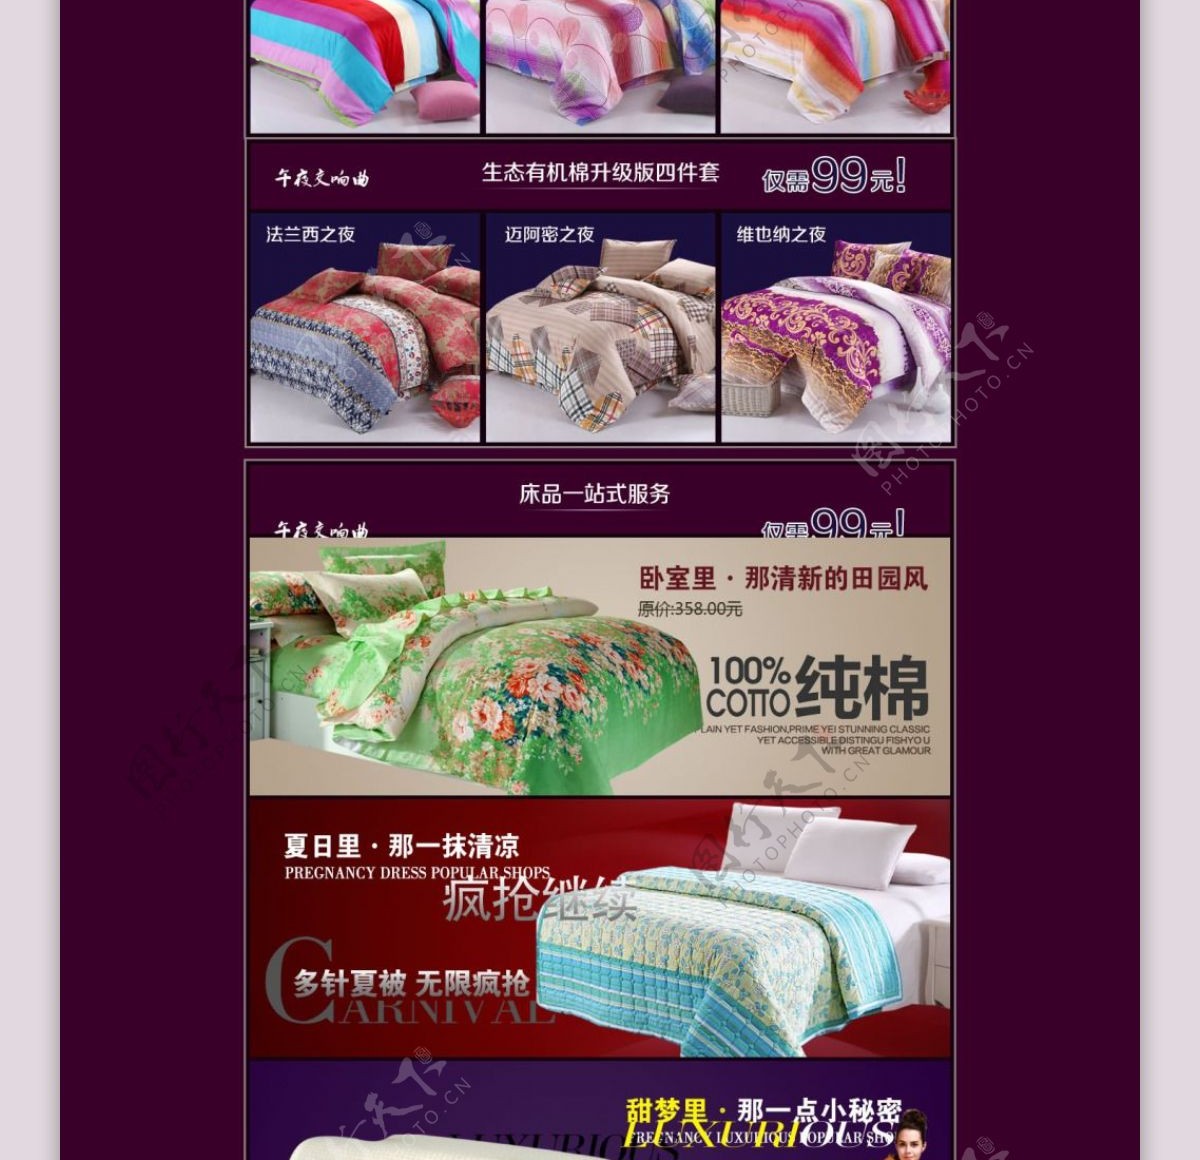 淘宝纯棉家纺产品品牌促销